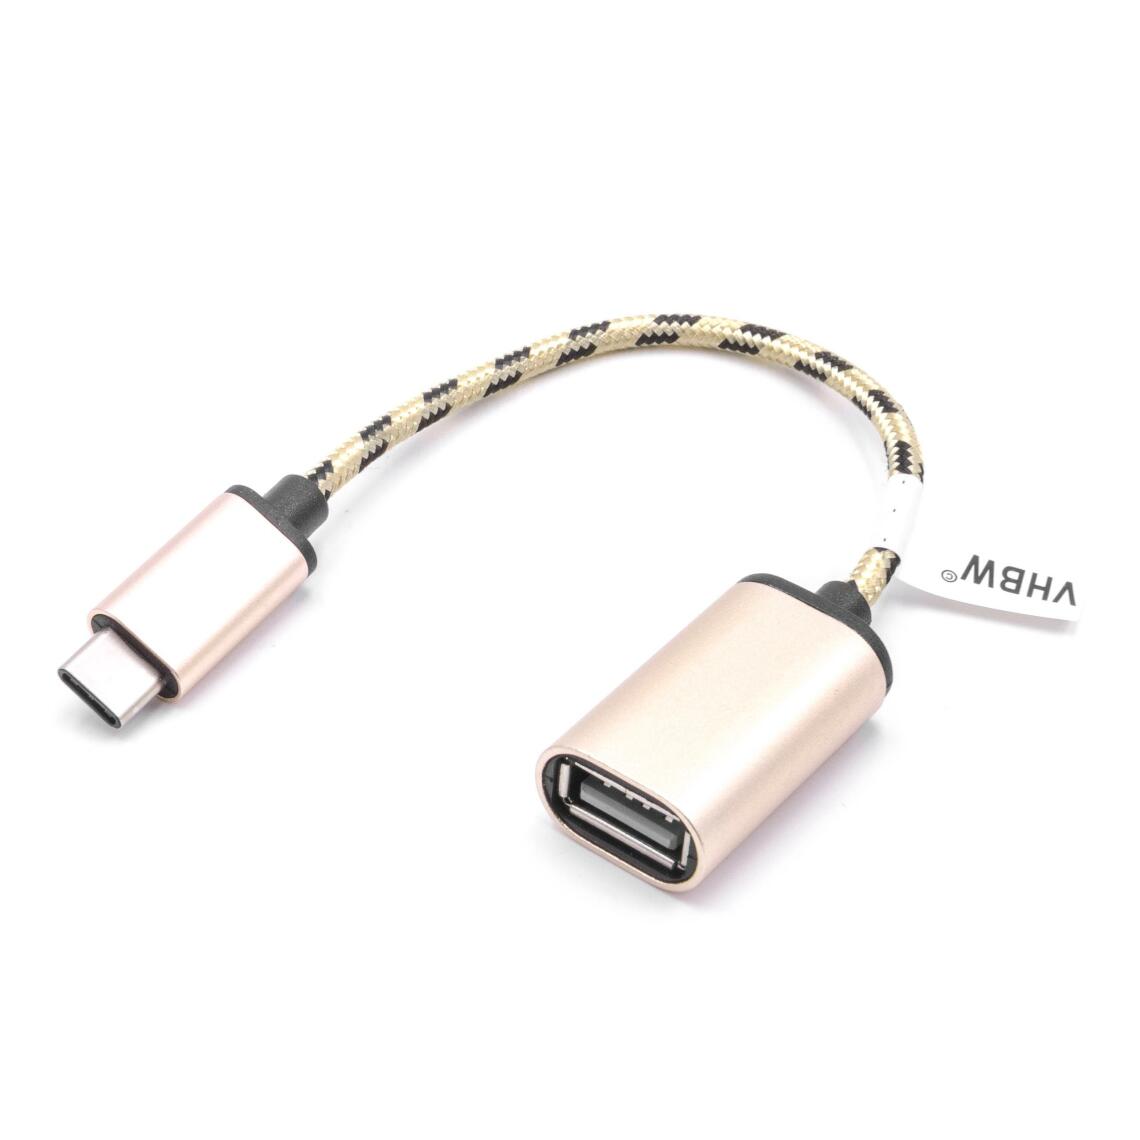 Vhbw - vhbw câble adaptateur USB type C sur USB 2.0 pour Samsung Galaxy A3 2017, A5 2017, A7 2017, A8 2018, Book, Note 8, S2, S8, S9, Tab S3, Tabpro S - Accessoires alimentation